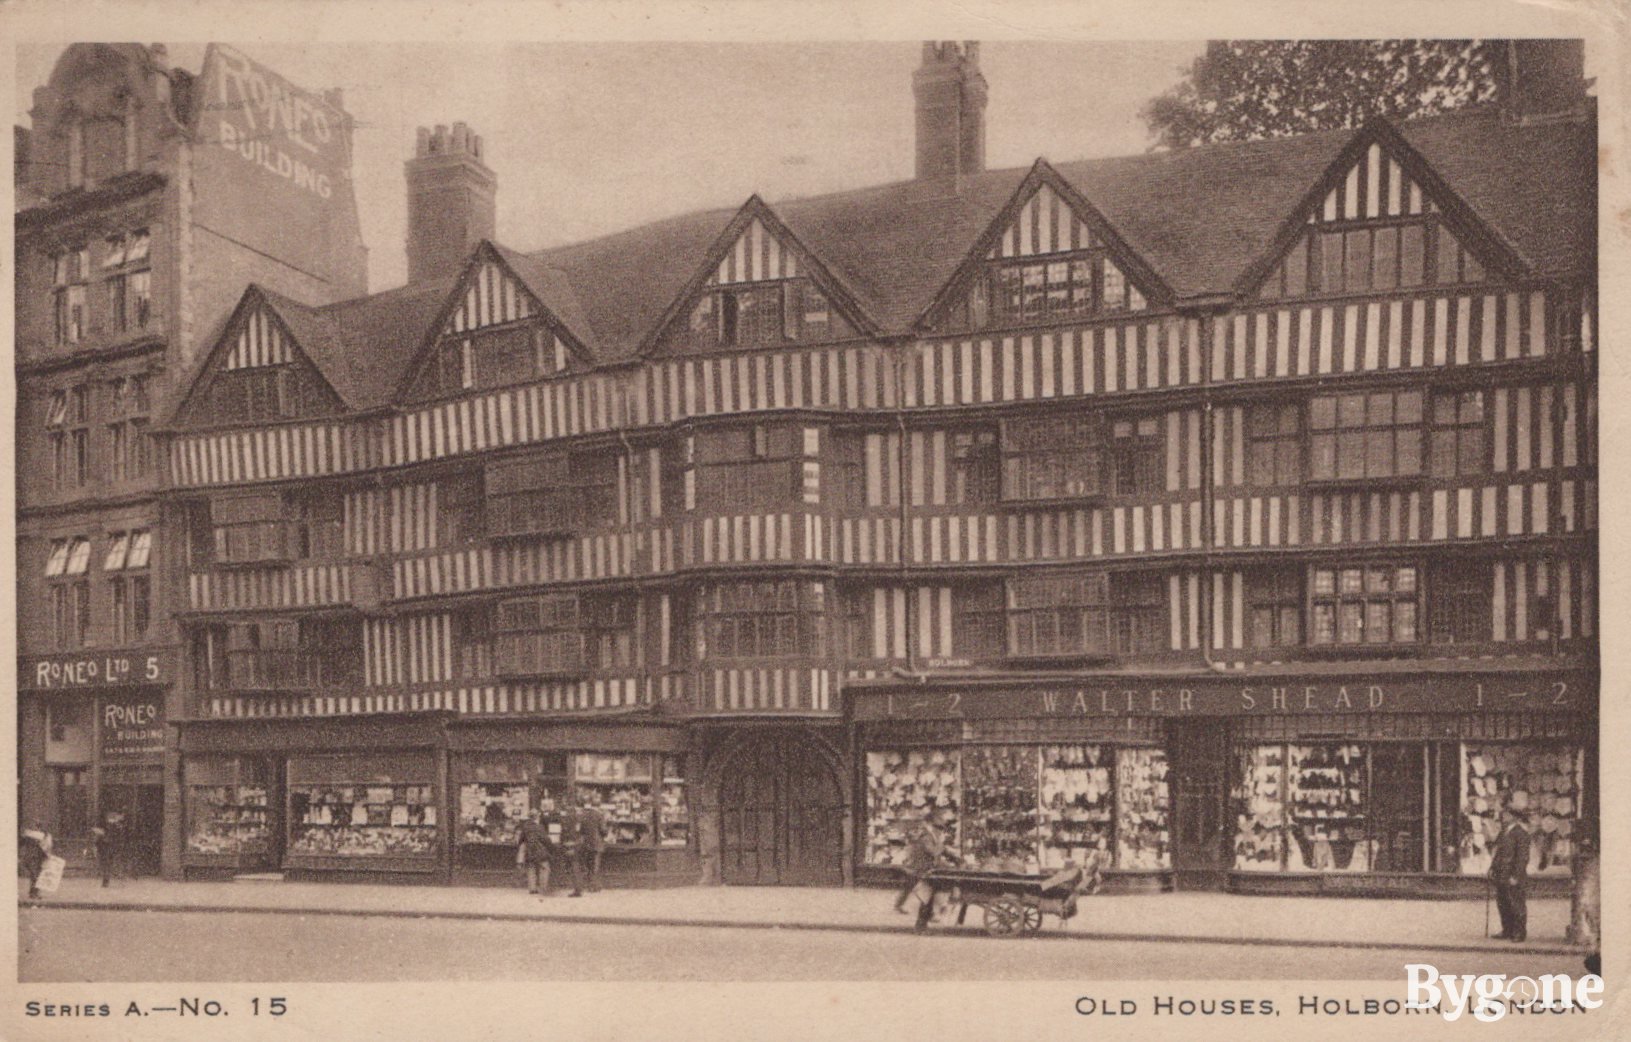 Staple Inn - "Old Houses", Holborn, London